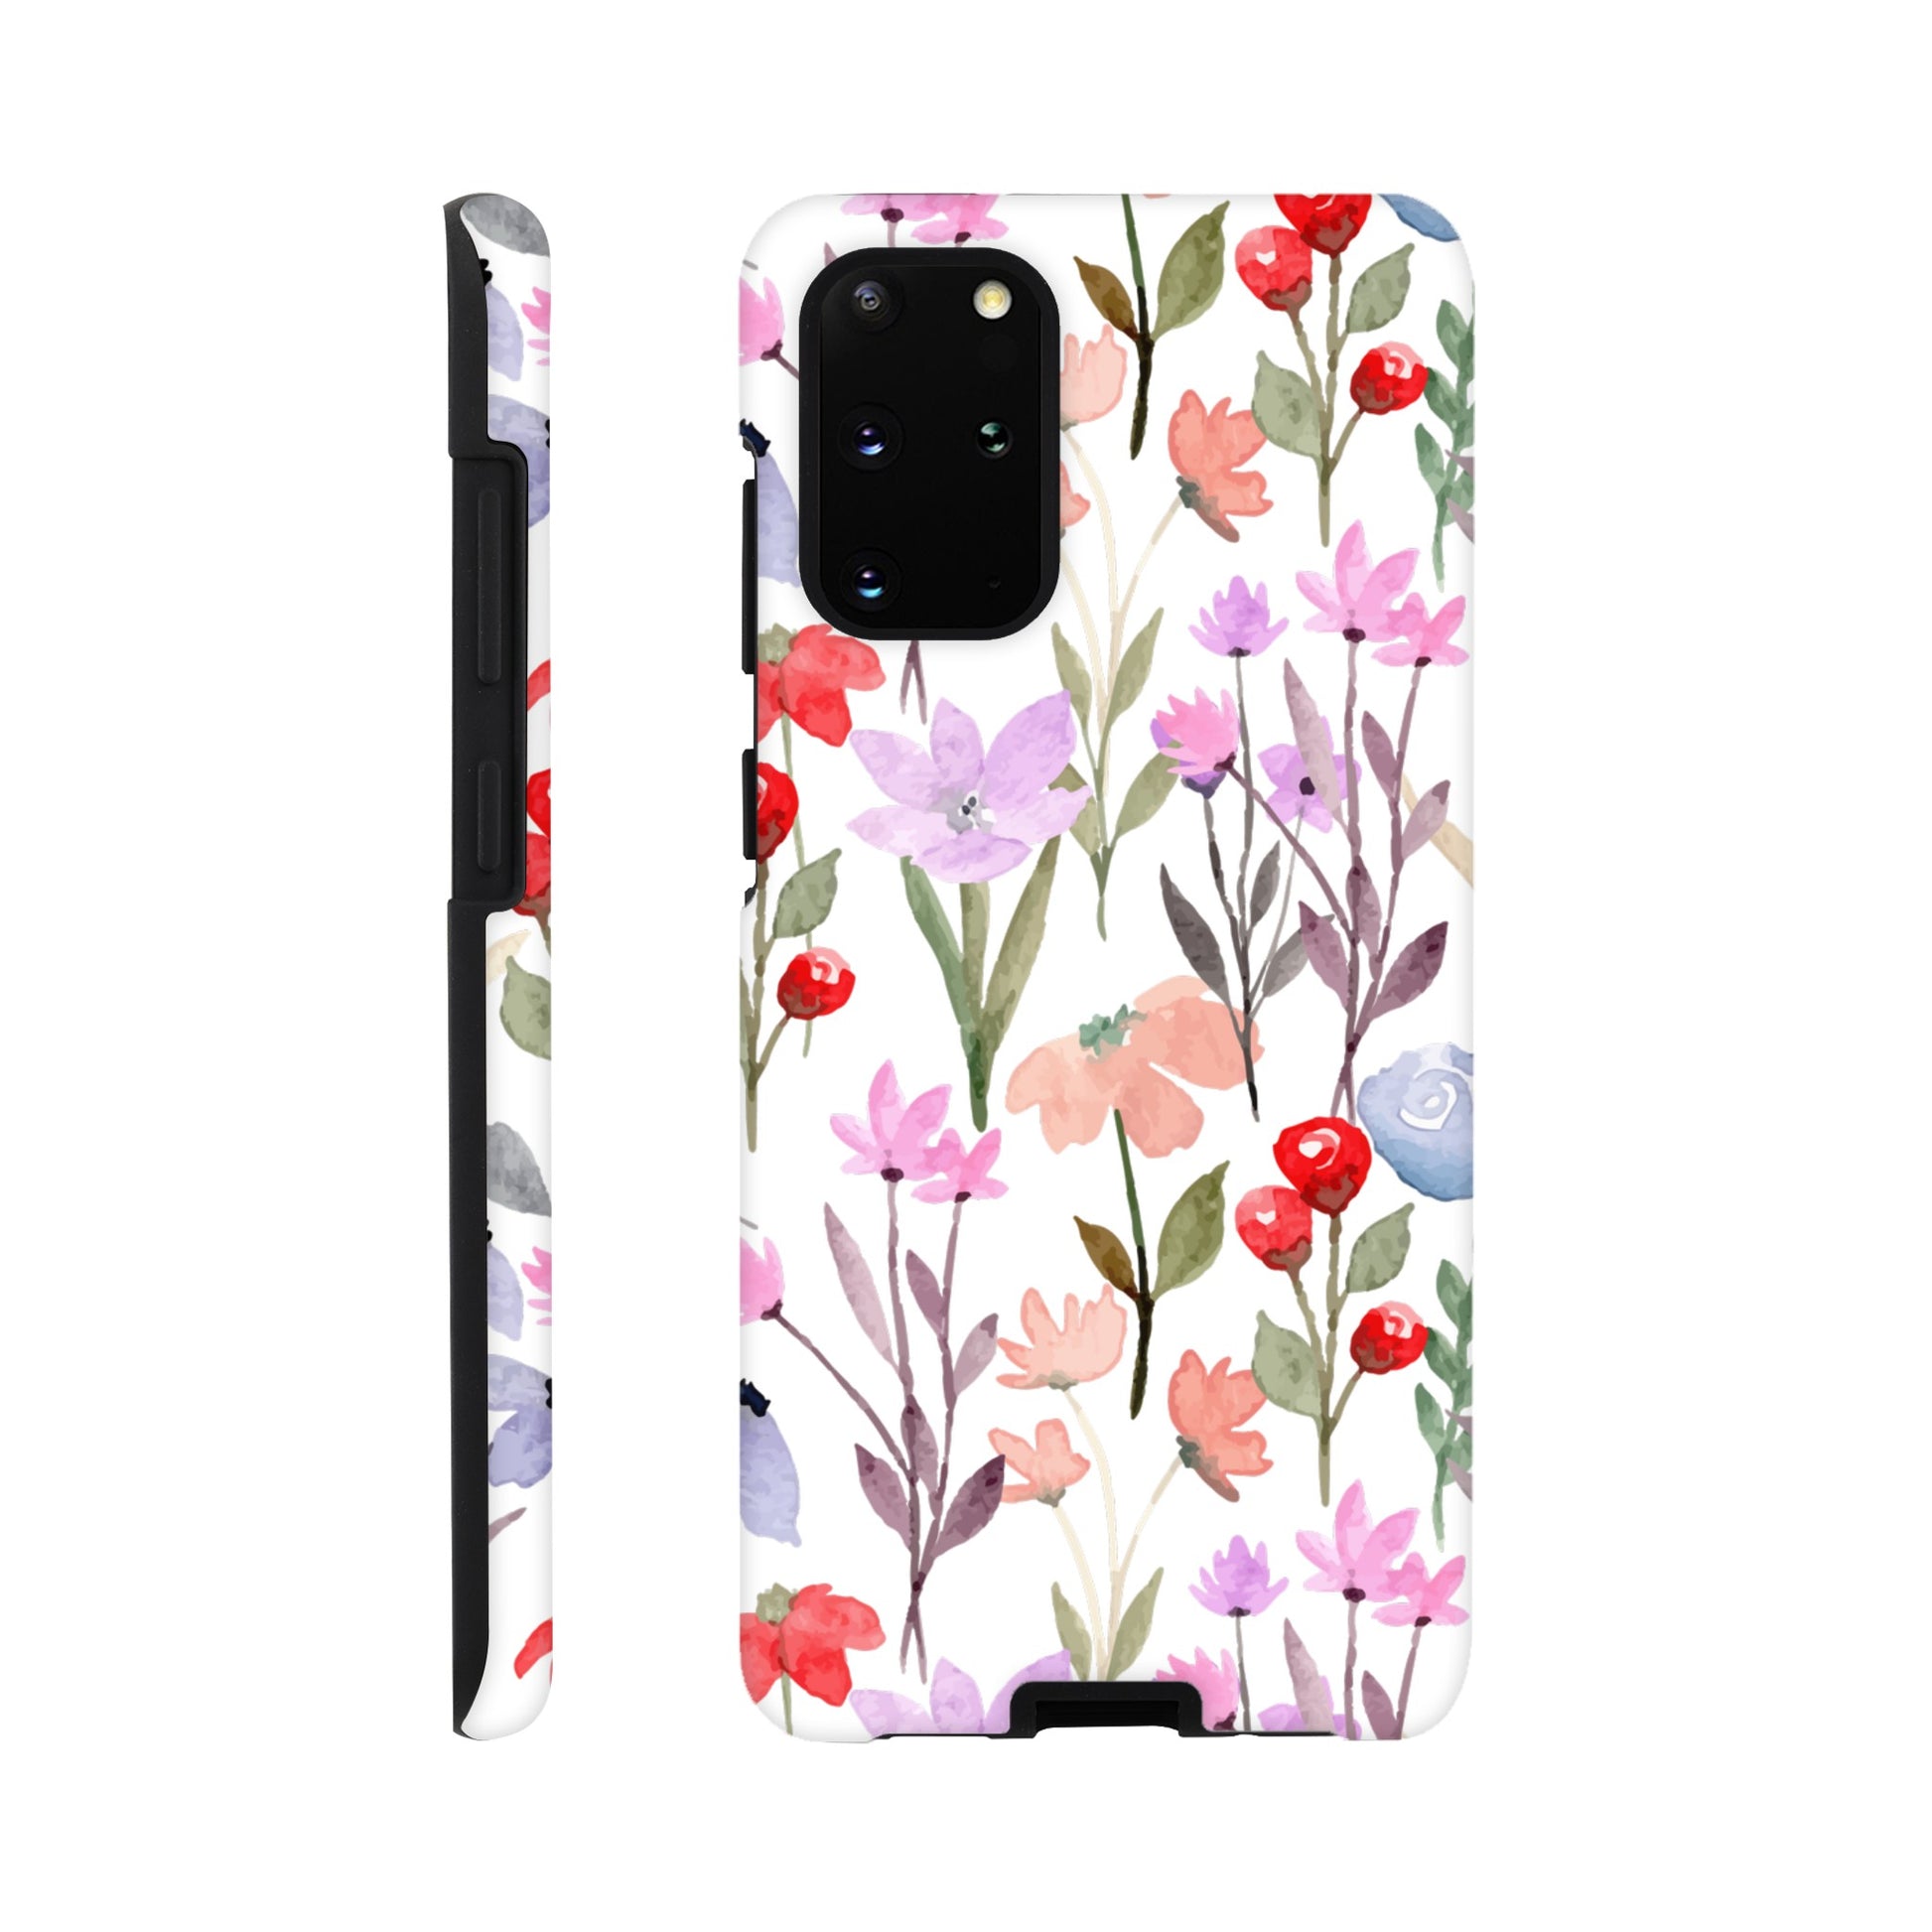 Watercolour Flowers - Phone Tough Case Galaxy S20 Plus Phone Case Plants